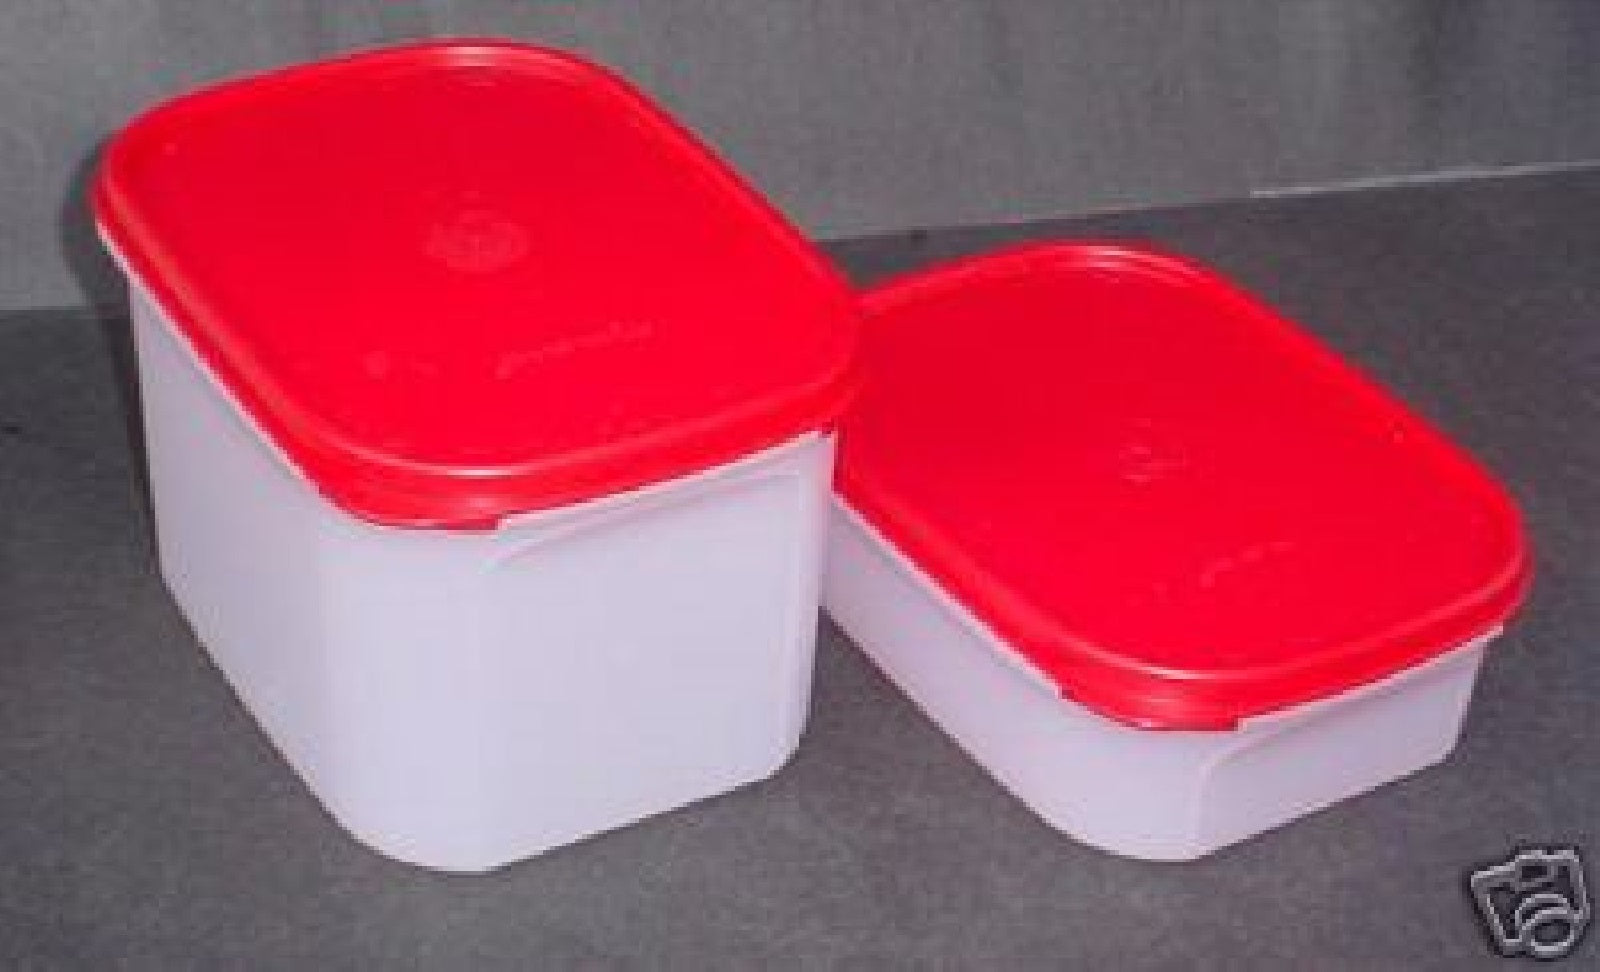 Tupperware Basic Bright Mini Rectangular 1 cup Snack Container Set